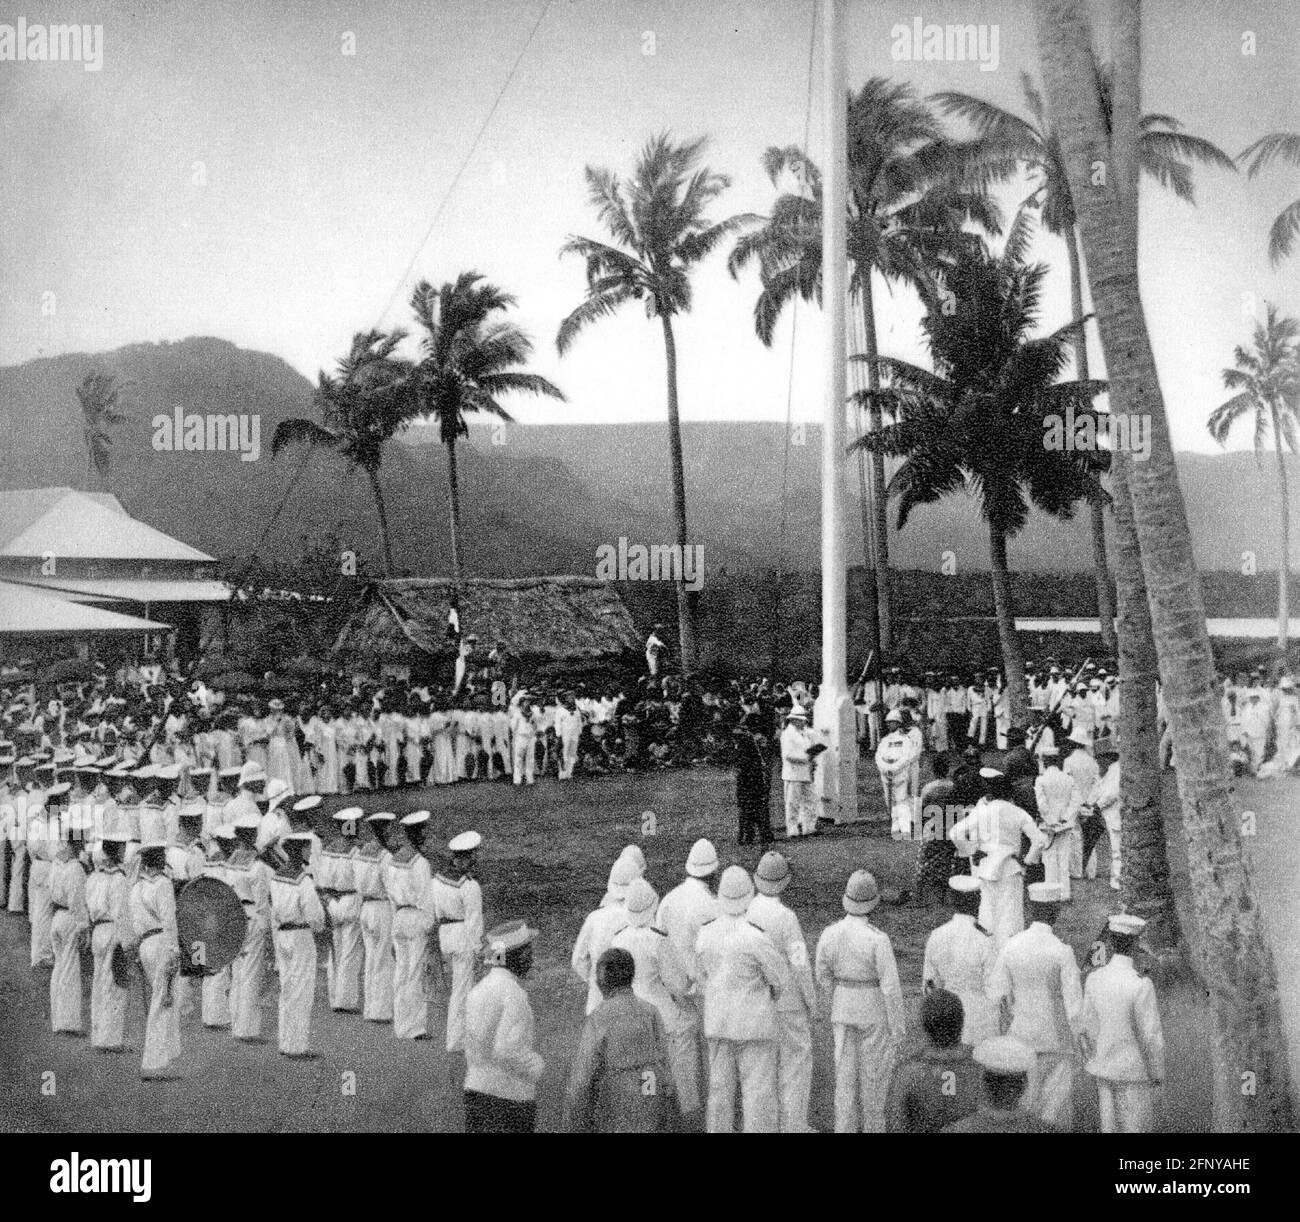 Colonialisme, colonies allemandes, îles Samoa, Polynésie, mise au point du drapeau allemand, Apia, 1.3.1900, AUTORISATION-DROITS-SUPPLÉMENTAIRES-INFO-NON-DISPONIBLE Banque D'Images